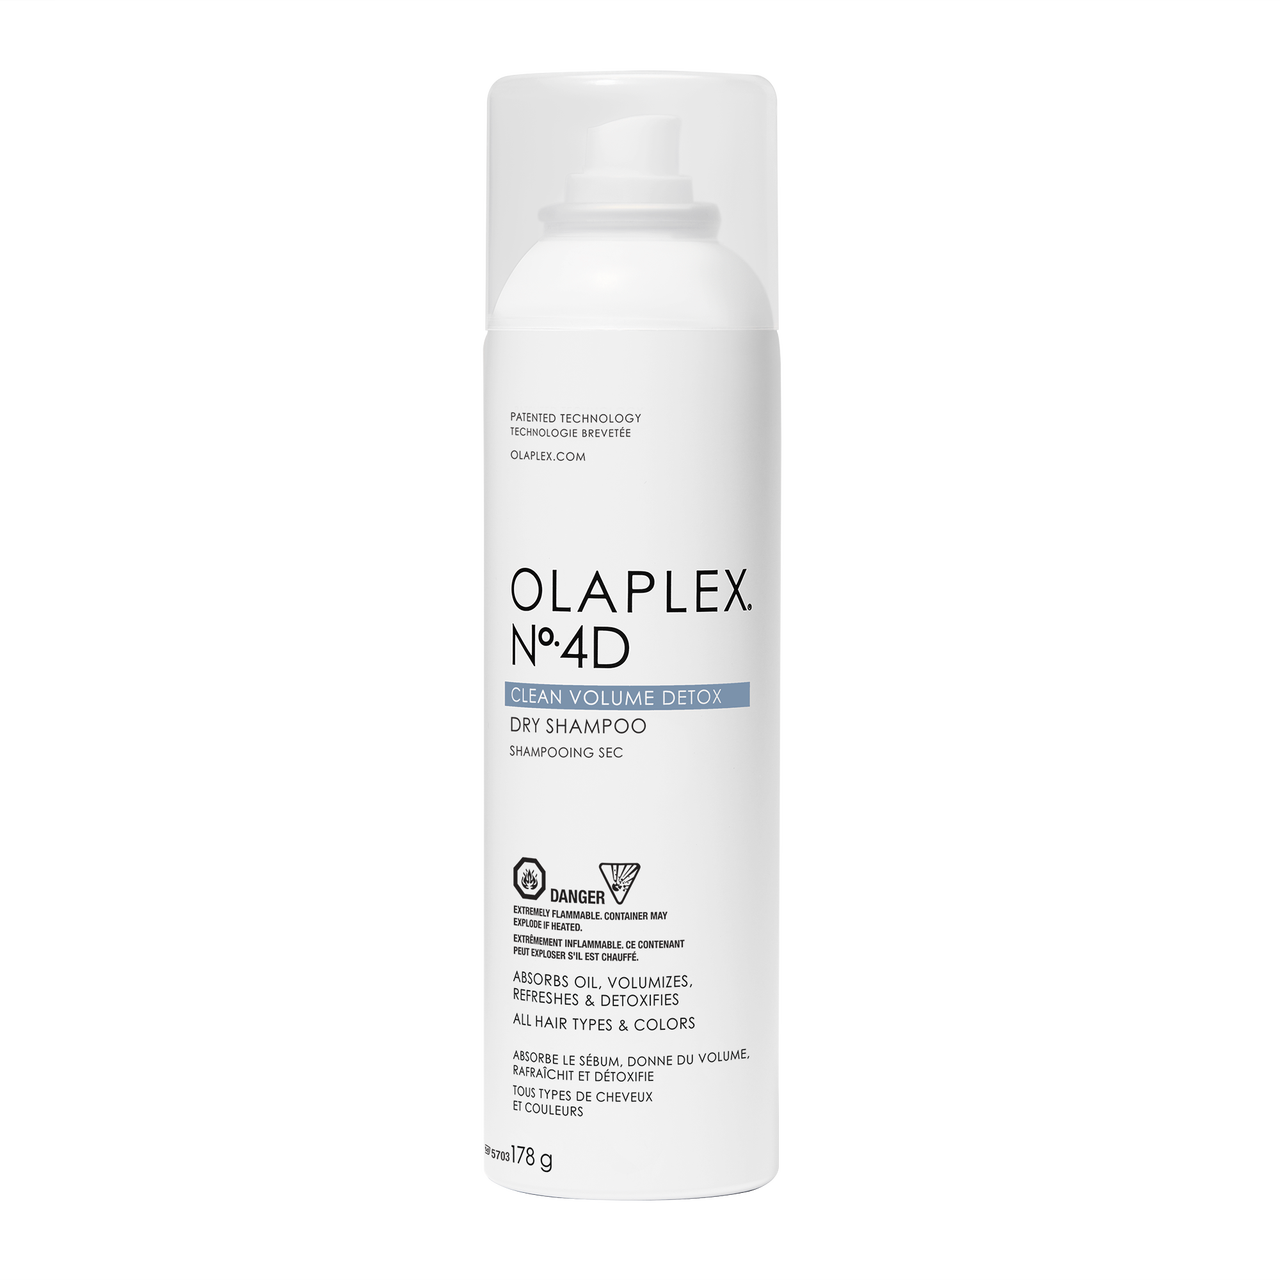 Suchy szampon – najmłodszy członek rodziny produktów OLAPLEX